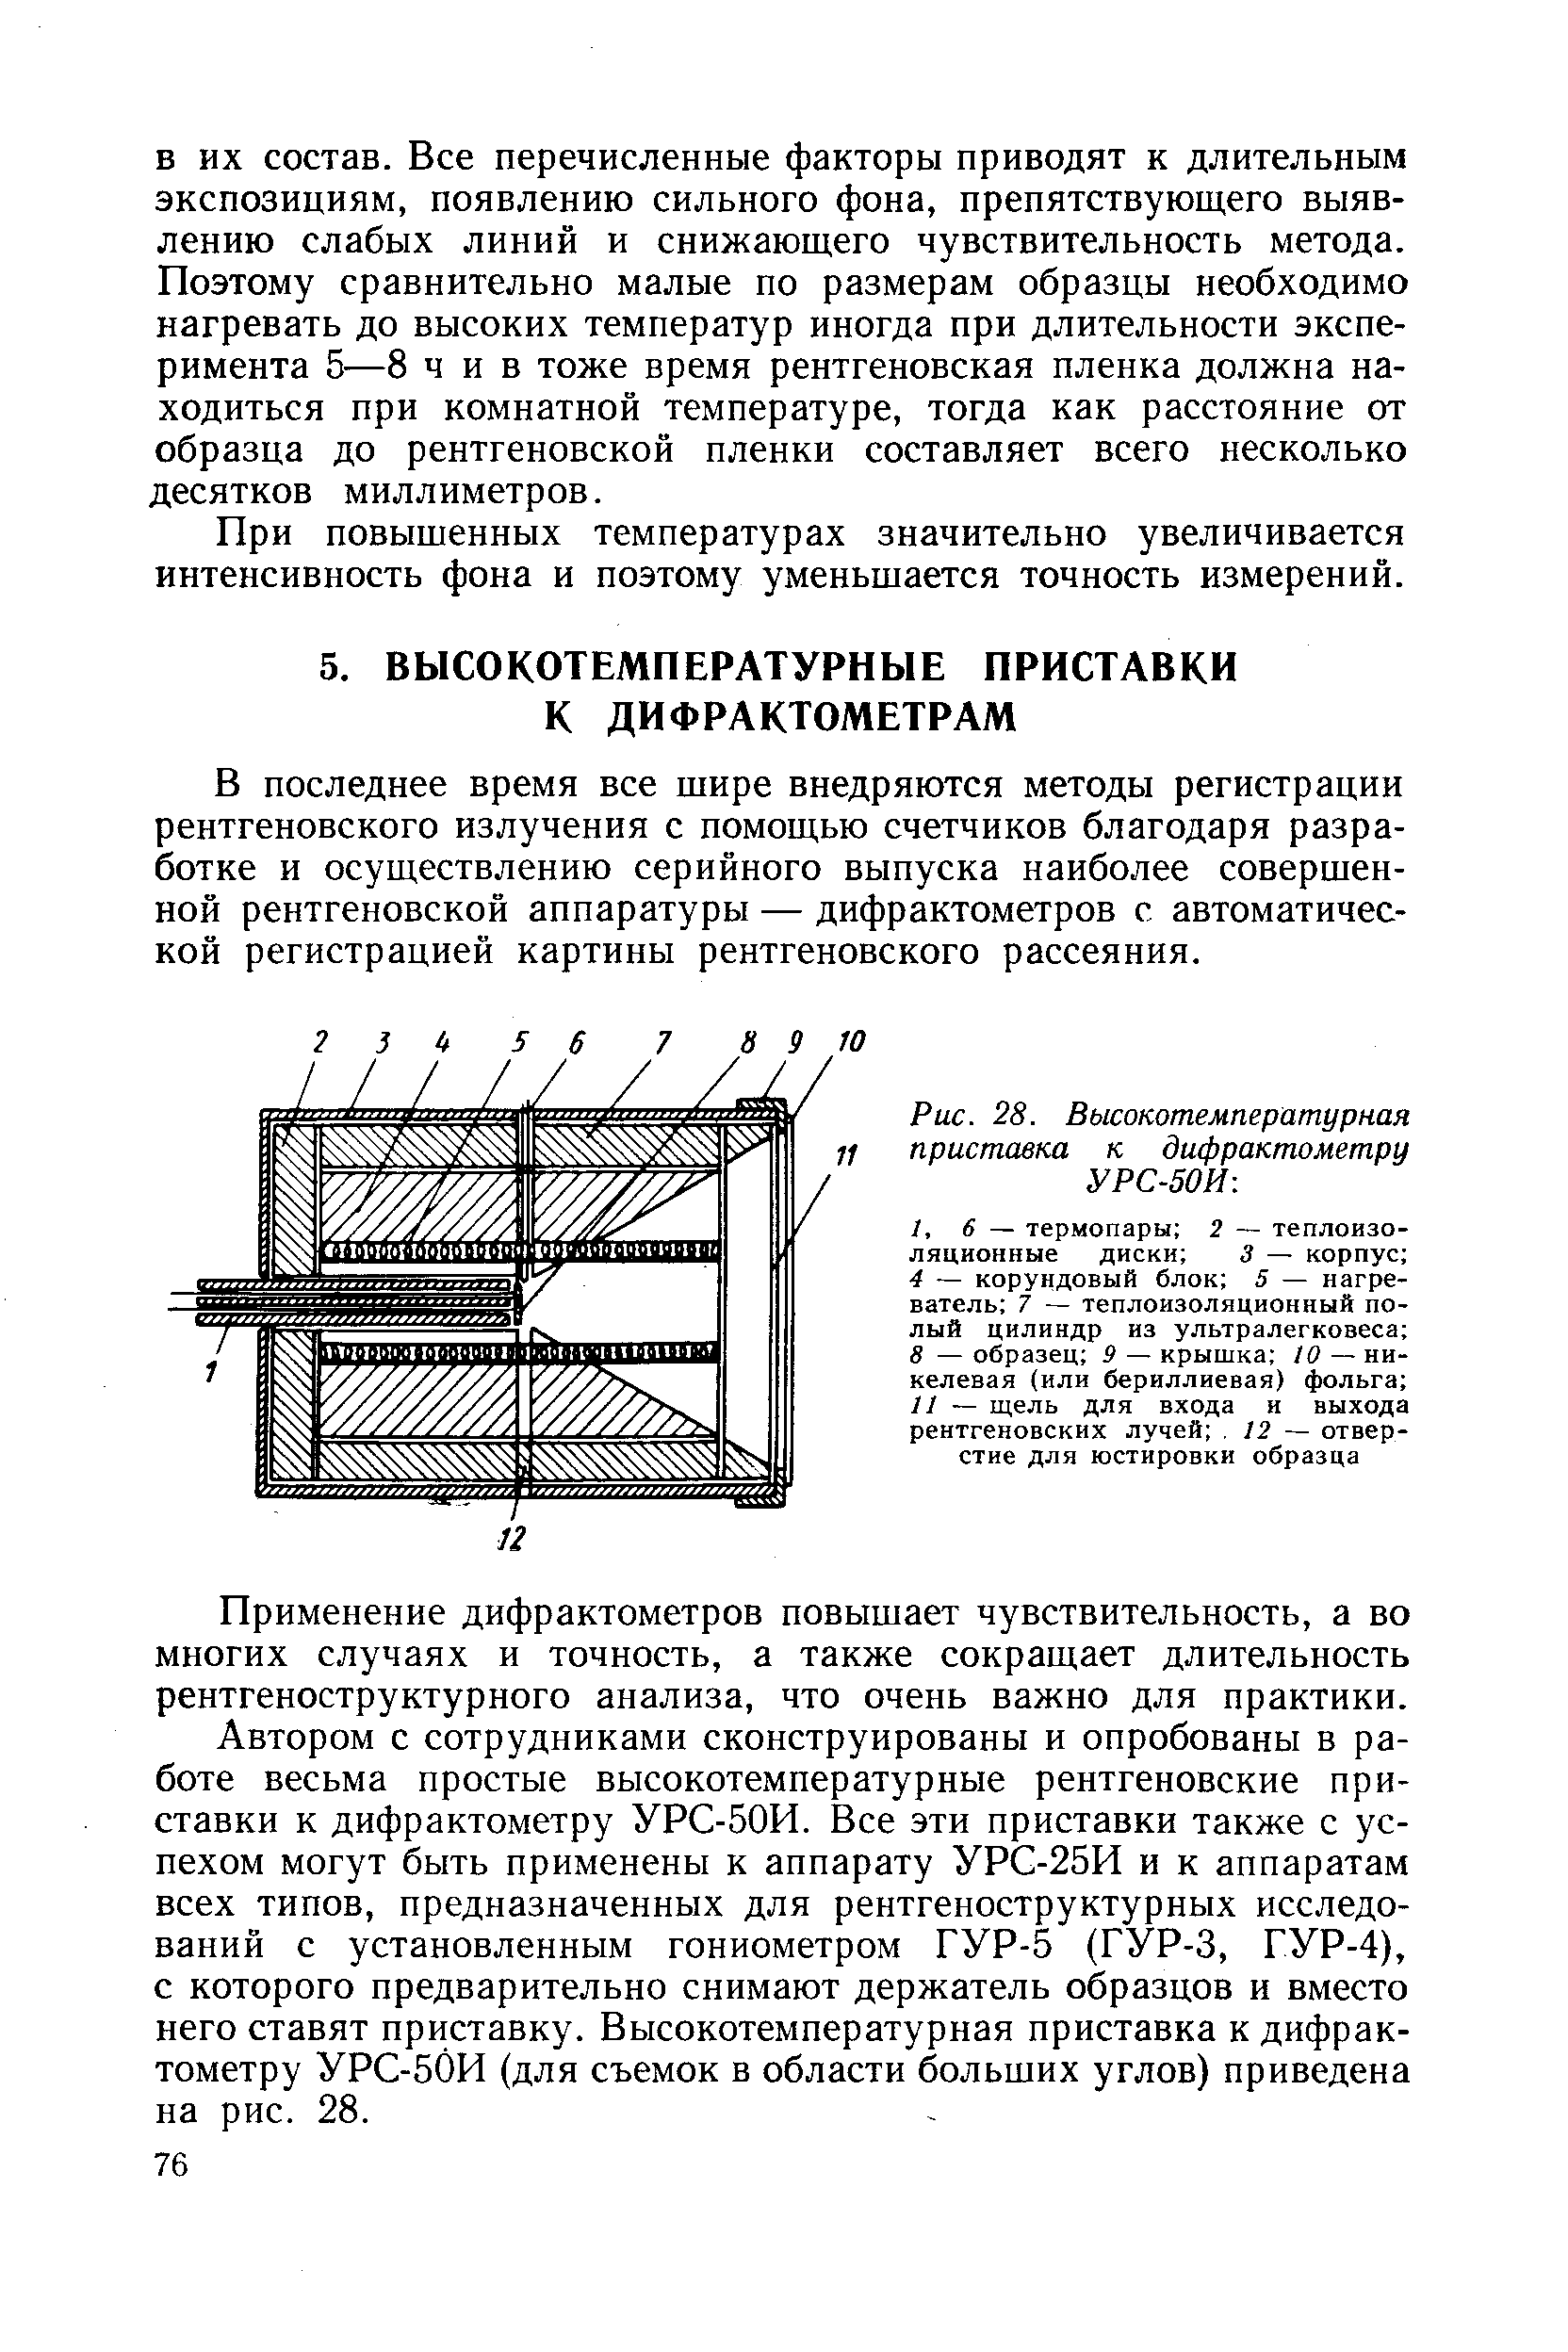 Рис. 28. Высокотемпературная приставка к дифрактометру УРС-50И 
